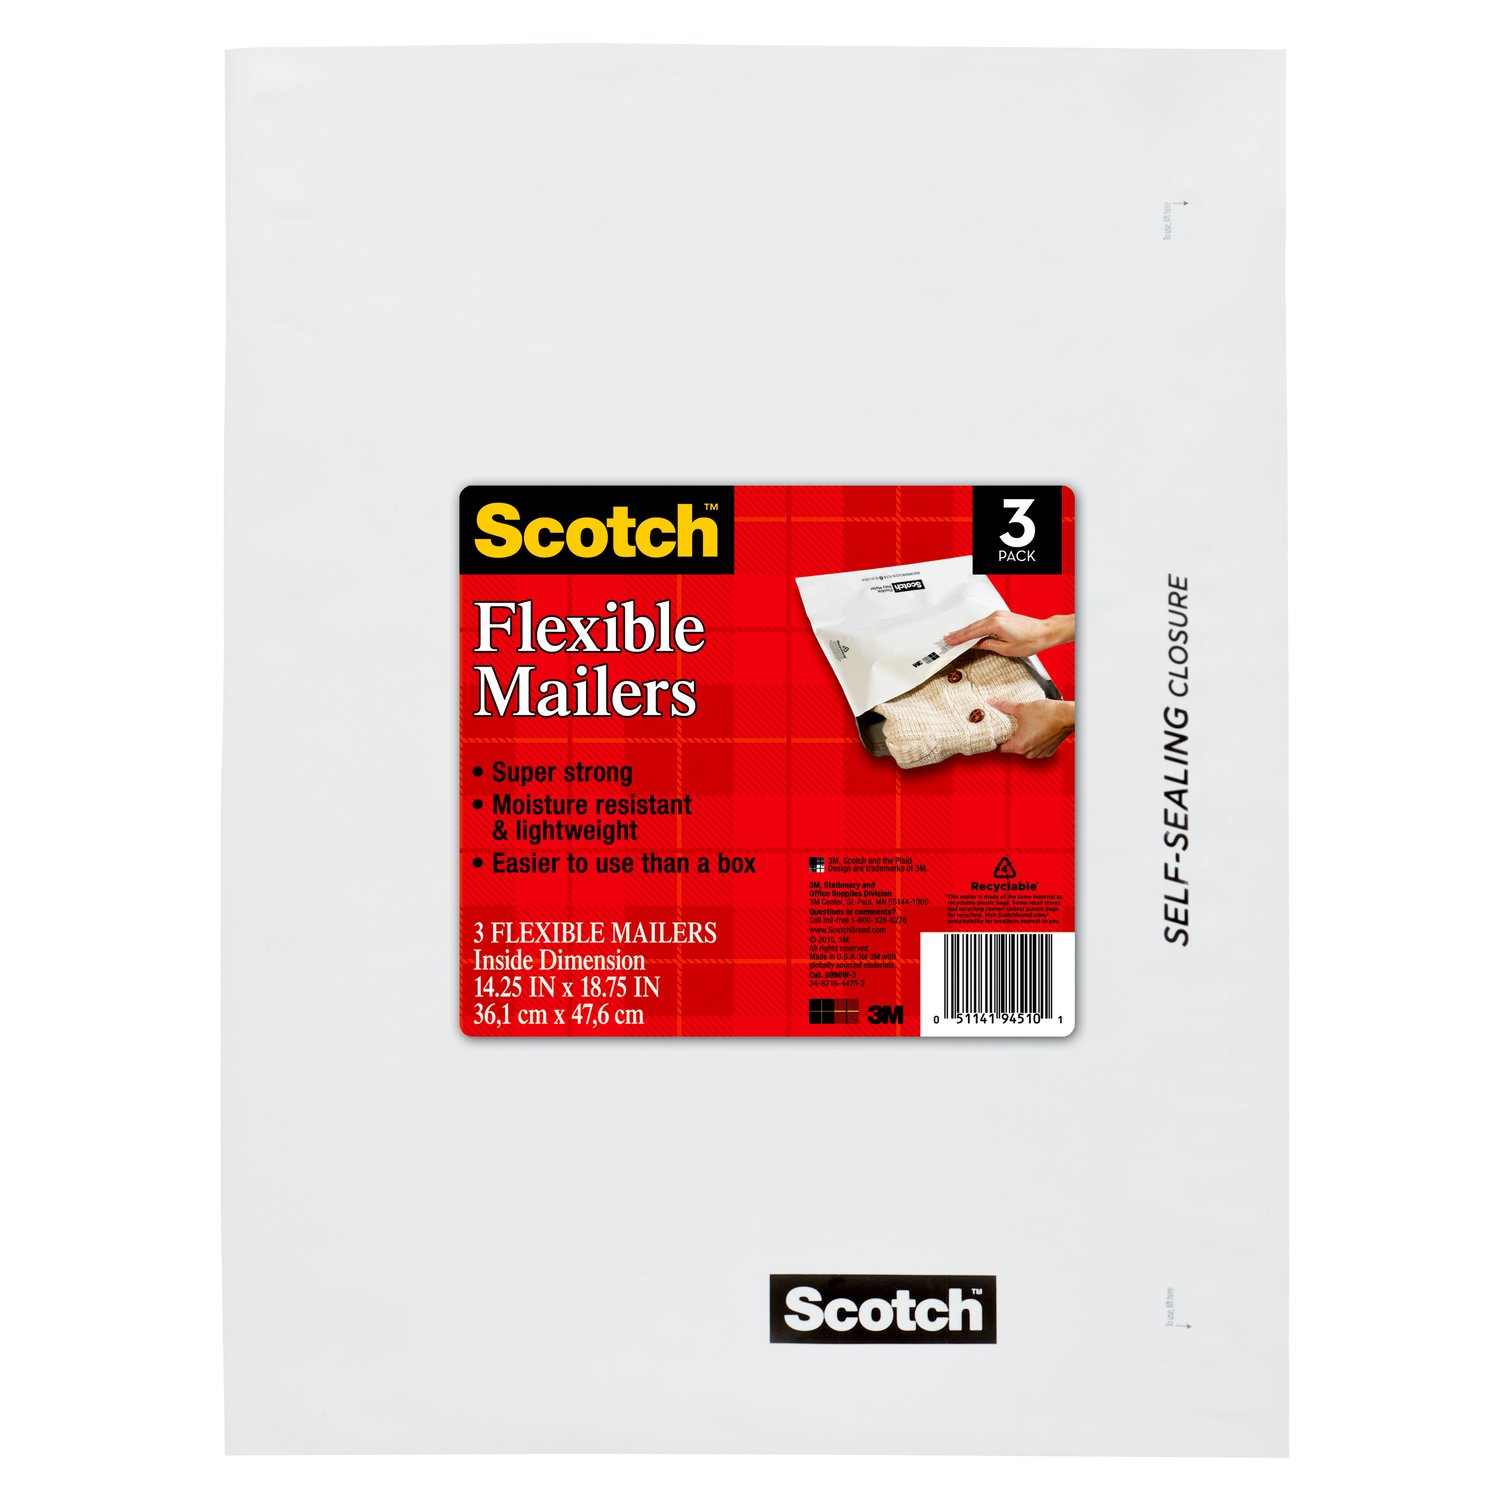 7010372554 - Scotch Flexible Mailers 3-Pack, 8990W-3, 14.25 in x 18.75 in (36,1 cm x
47,6 cm)